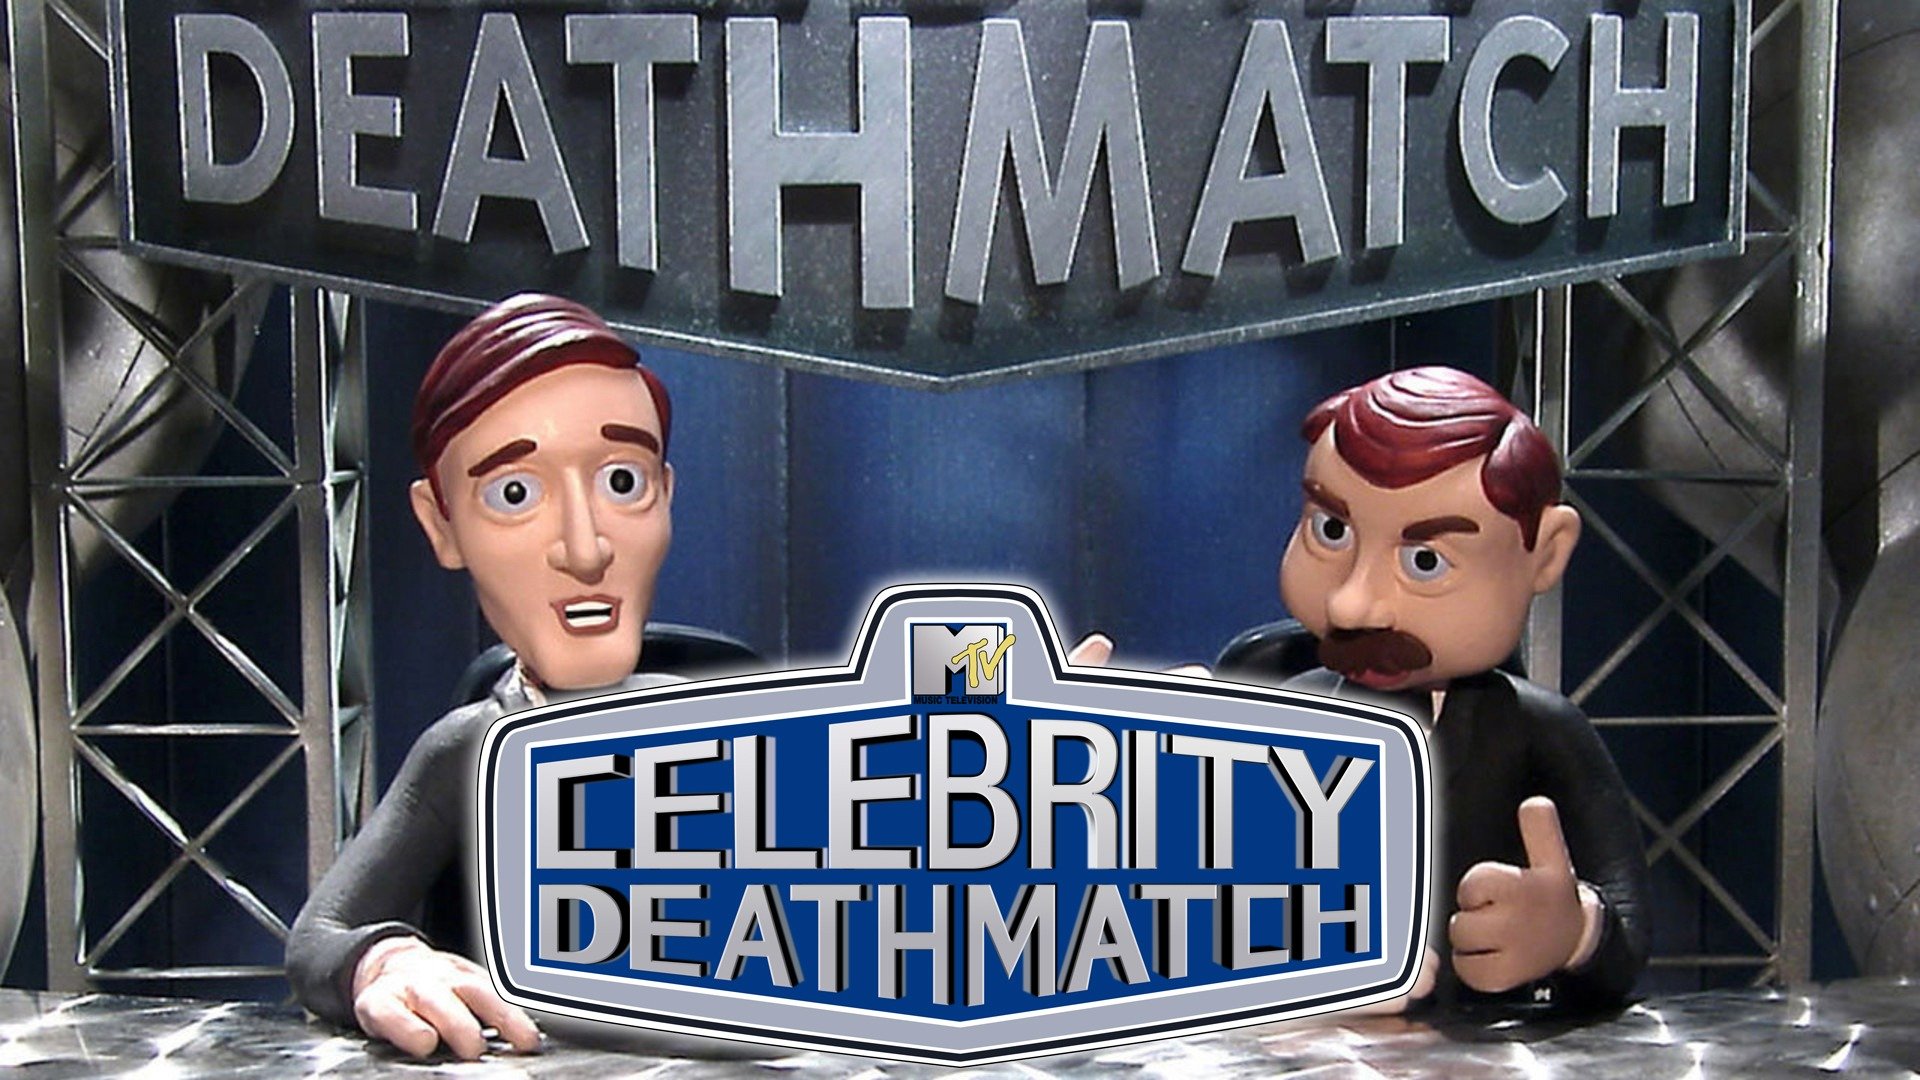 Mtv Celebrity Deathmatch